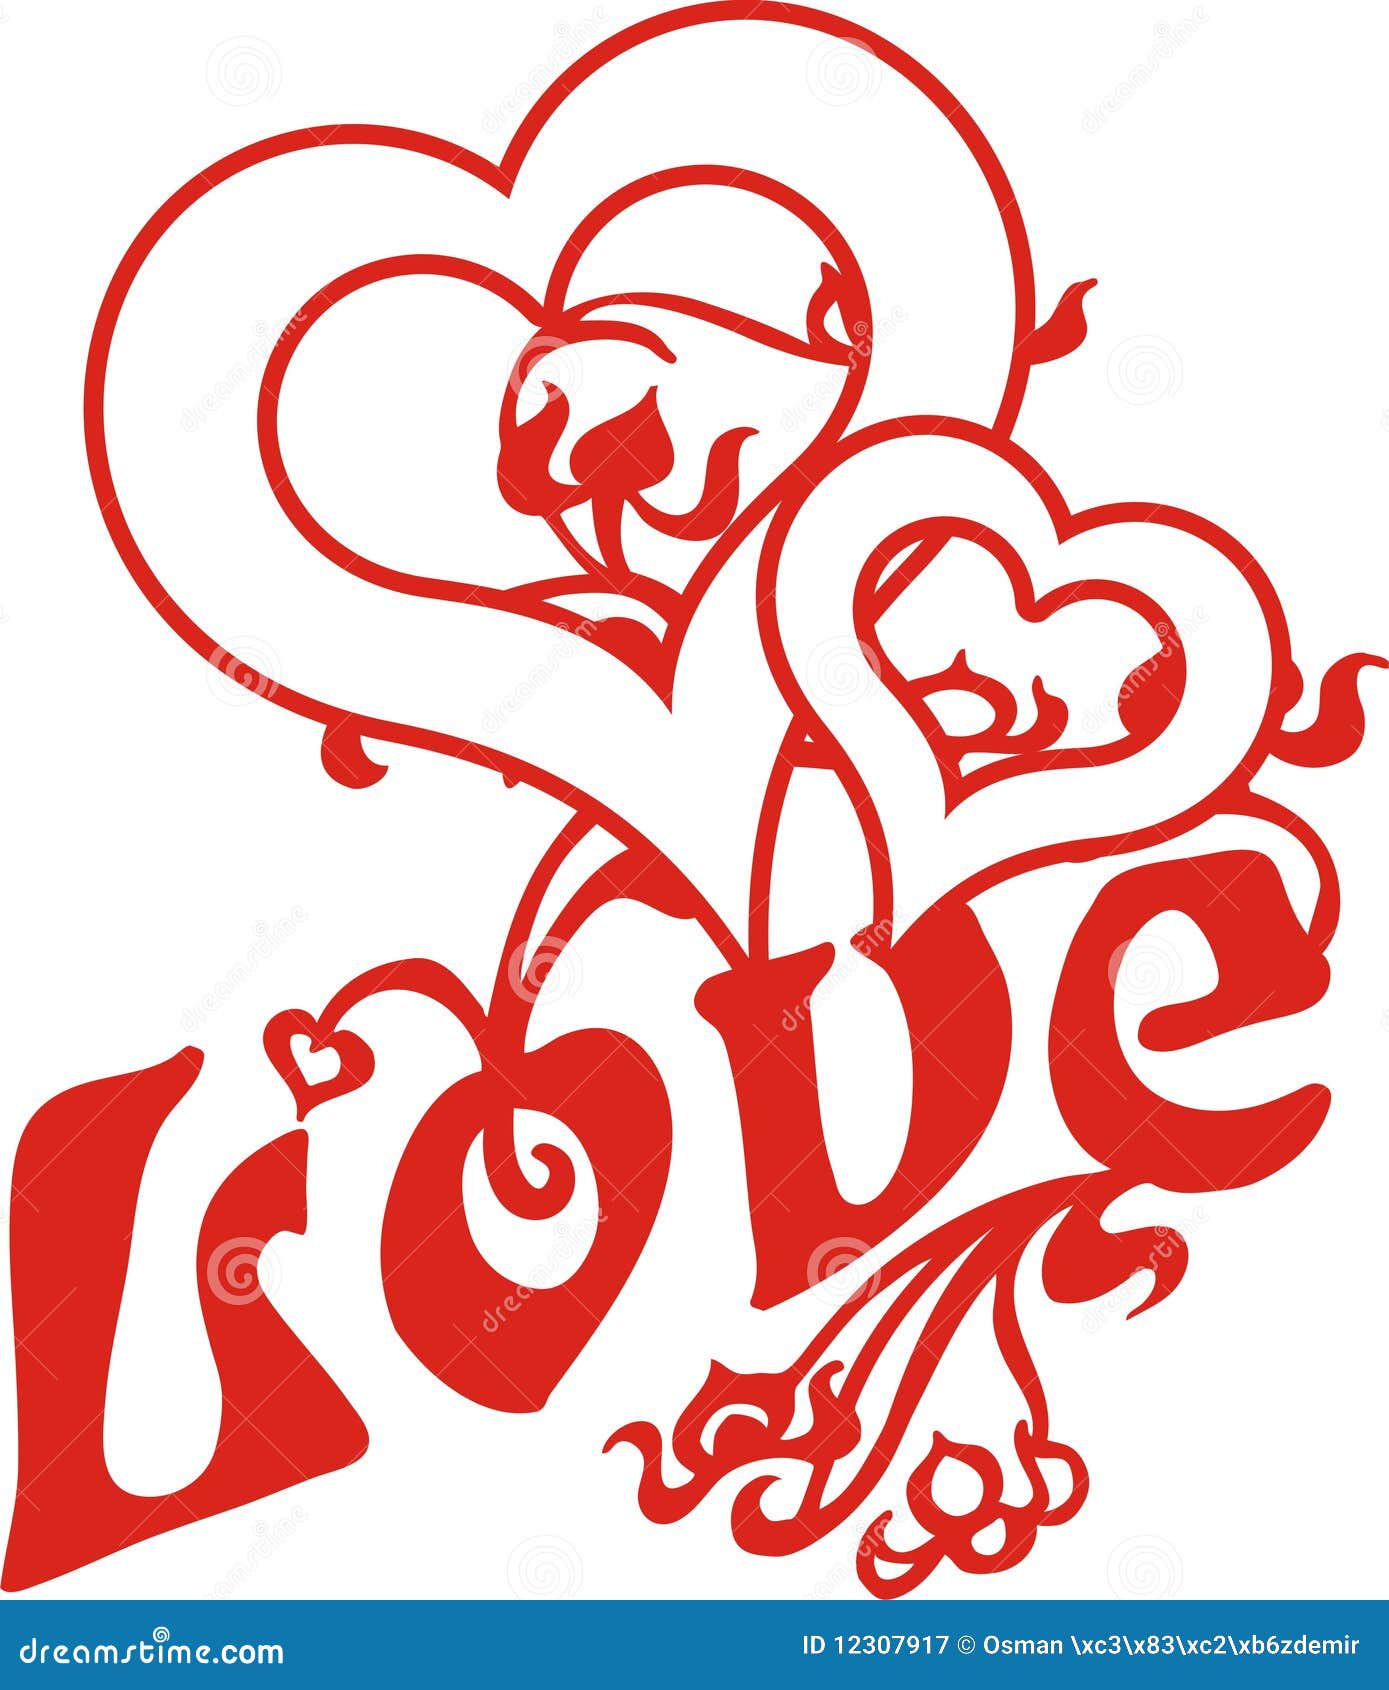 Love Heart Stock Illustration Illustration Of February